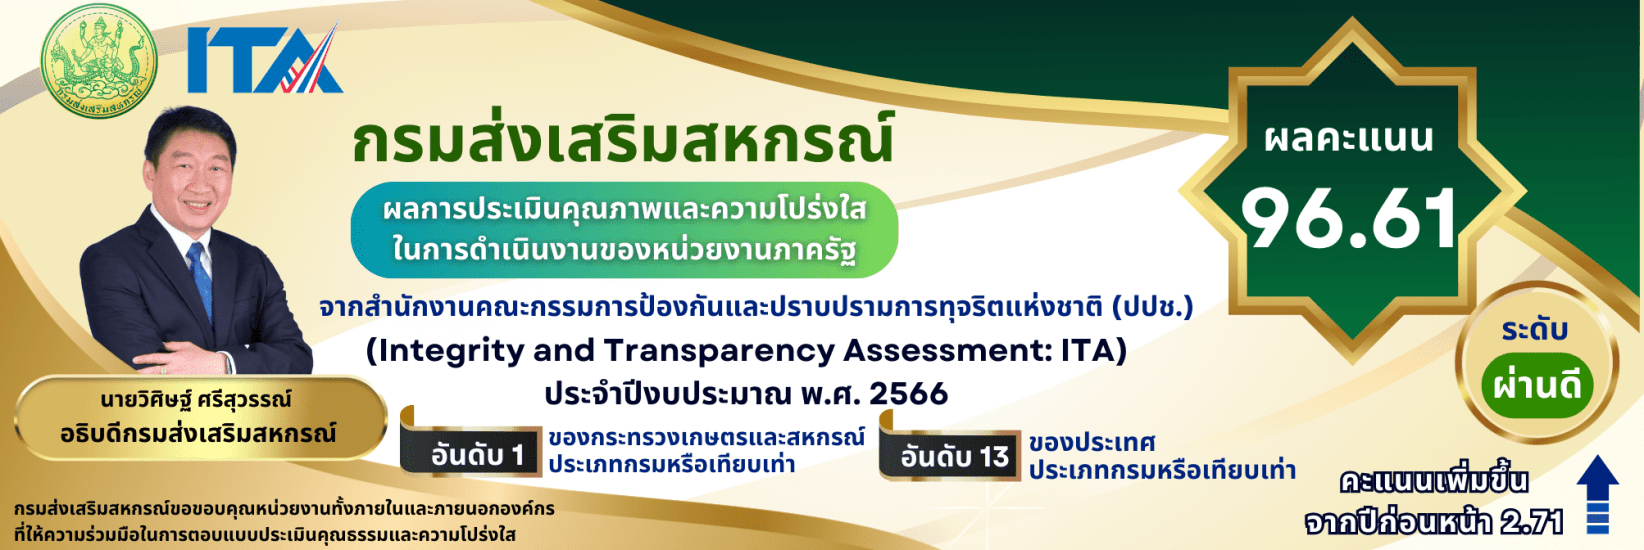 ผลการประเมินคุณภาพและความโปร่งใสในการดำเนินงานของหน่วยงานภาครัฐ (Integrity and Transparency Assessment : ITA) 2566